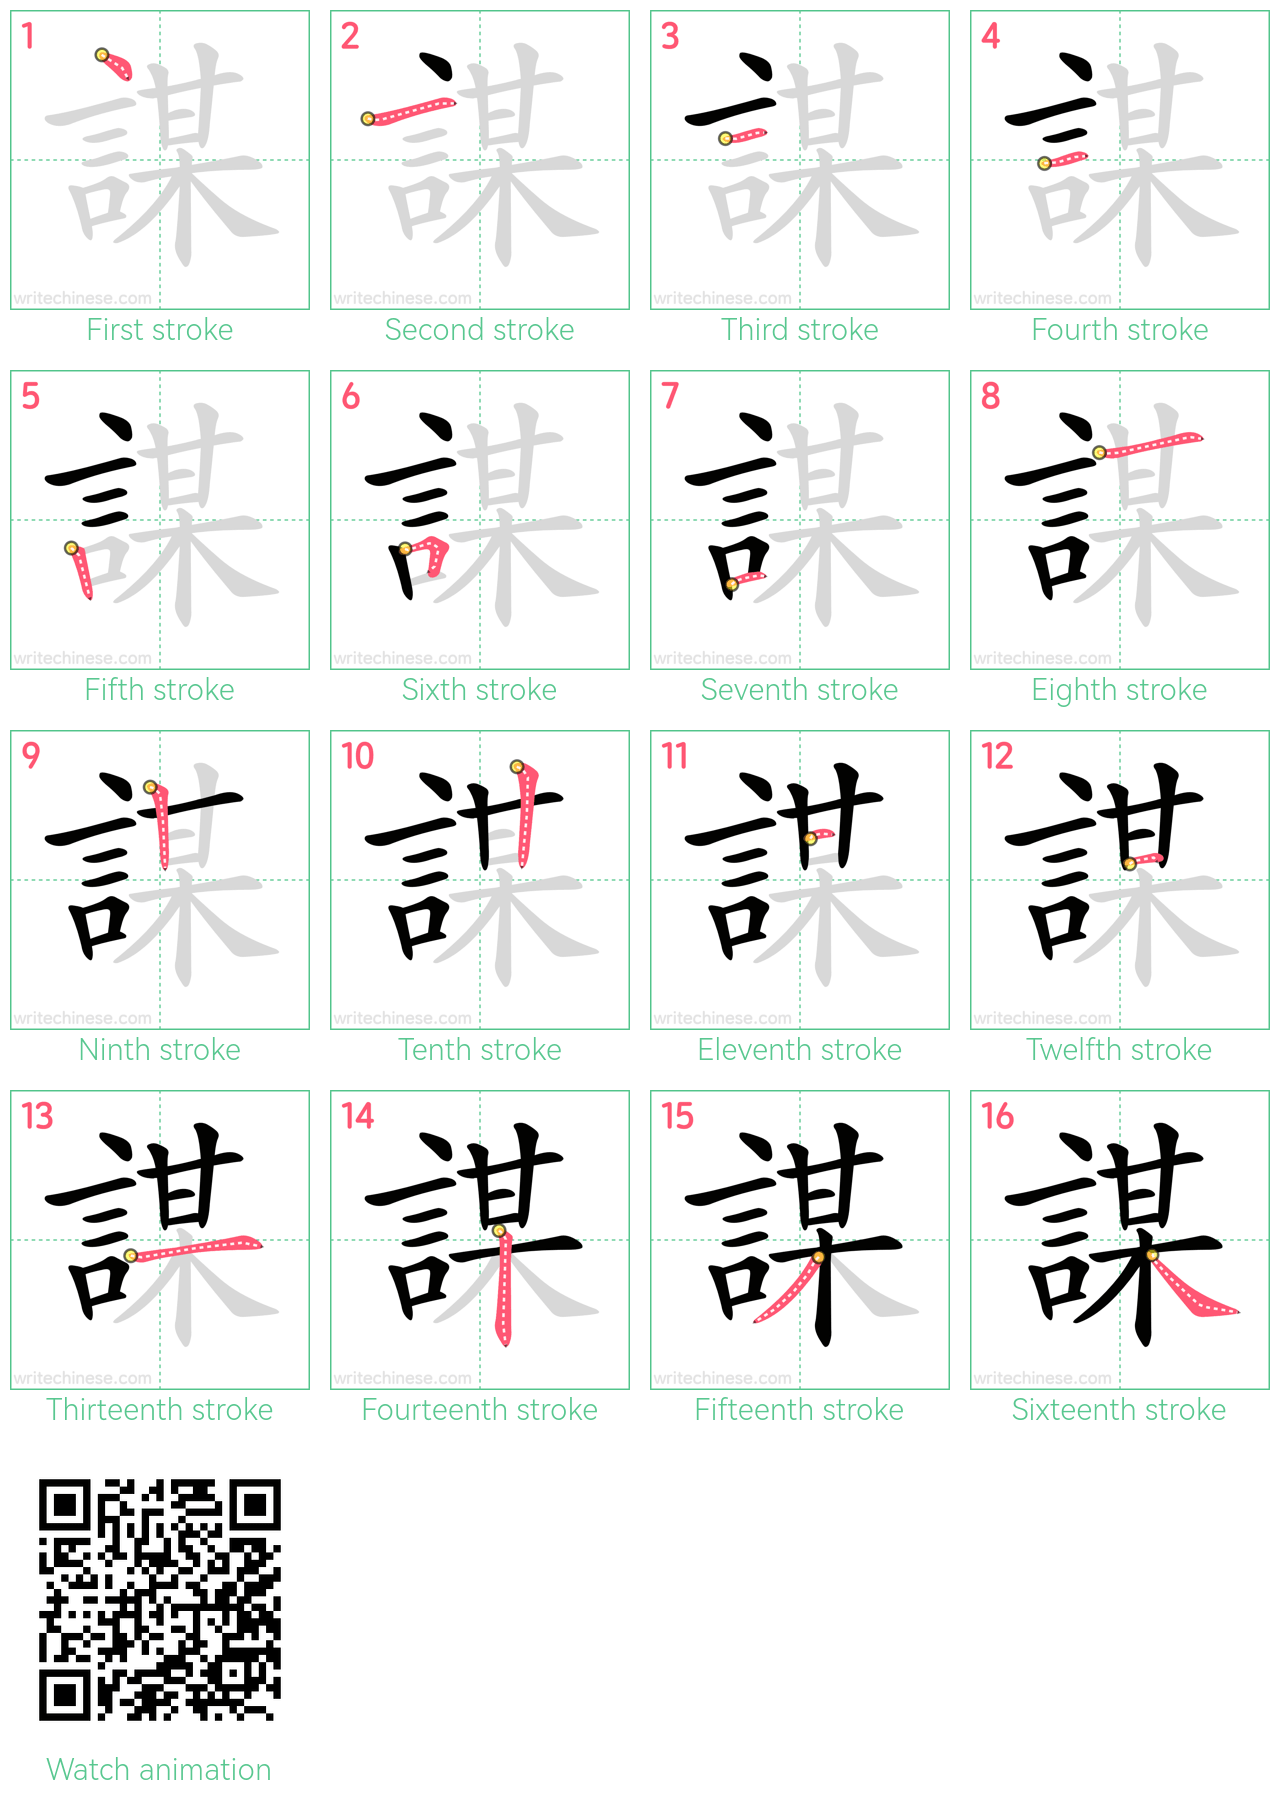 謀 step-by-step stroke order diagrams